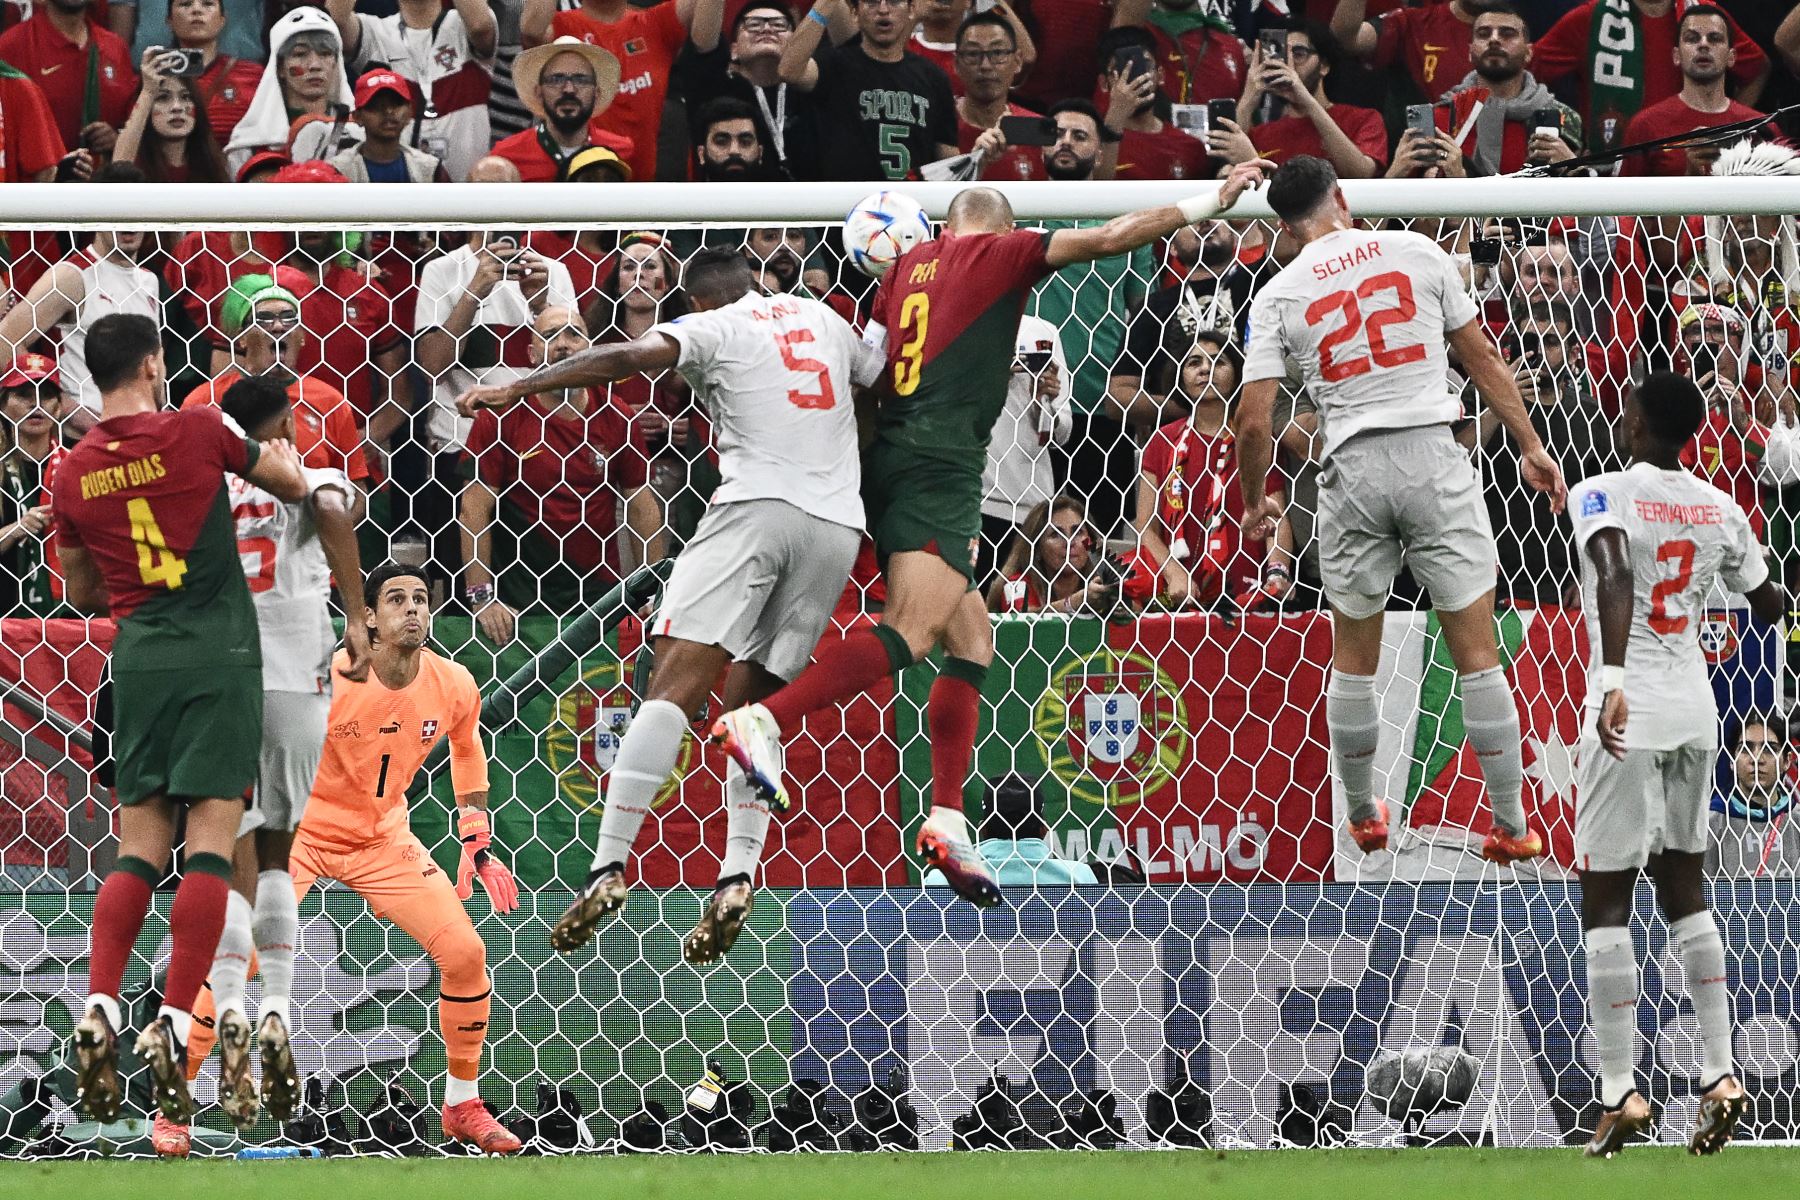 El defensor de Portugal, Pepe, anota el segundo gol de su equipo durante el partido de fútbol de octavos de final de la Copa Mundial de Qatar 2022 entre Portugal y Suiza en el Estadio Lusail en Lusail, al norte de Doha, el 6 de diciembre de 2022.
Foto: AFP